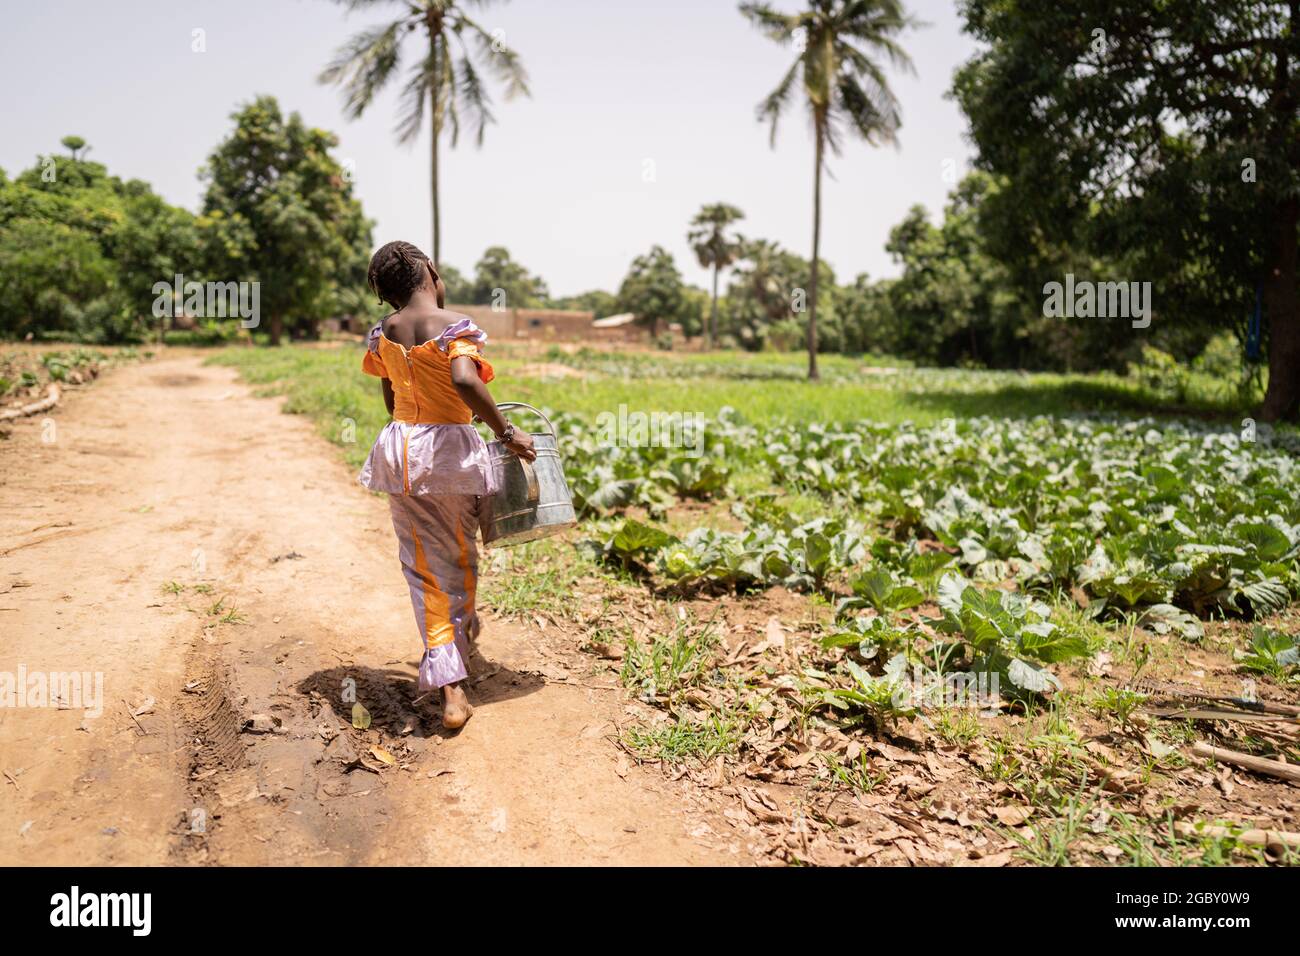 Petite fille africaine noire lutte pour porter un arrosoir lourd du puits au champ; concept de travail des enfants Banque D'Images